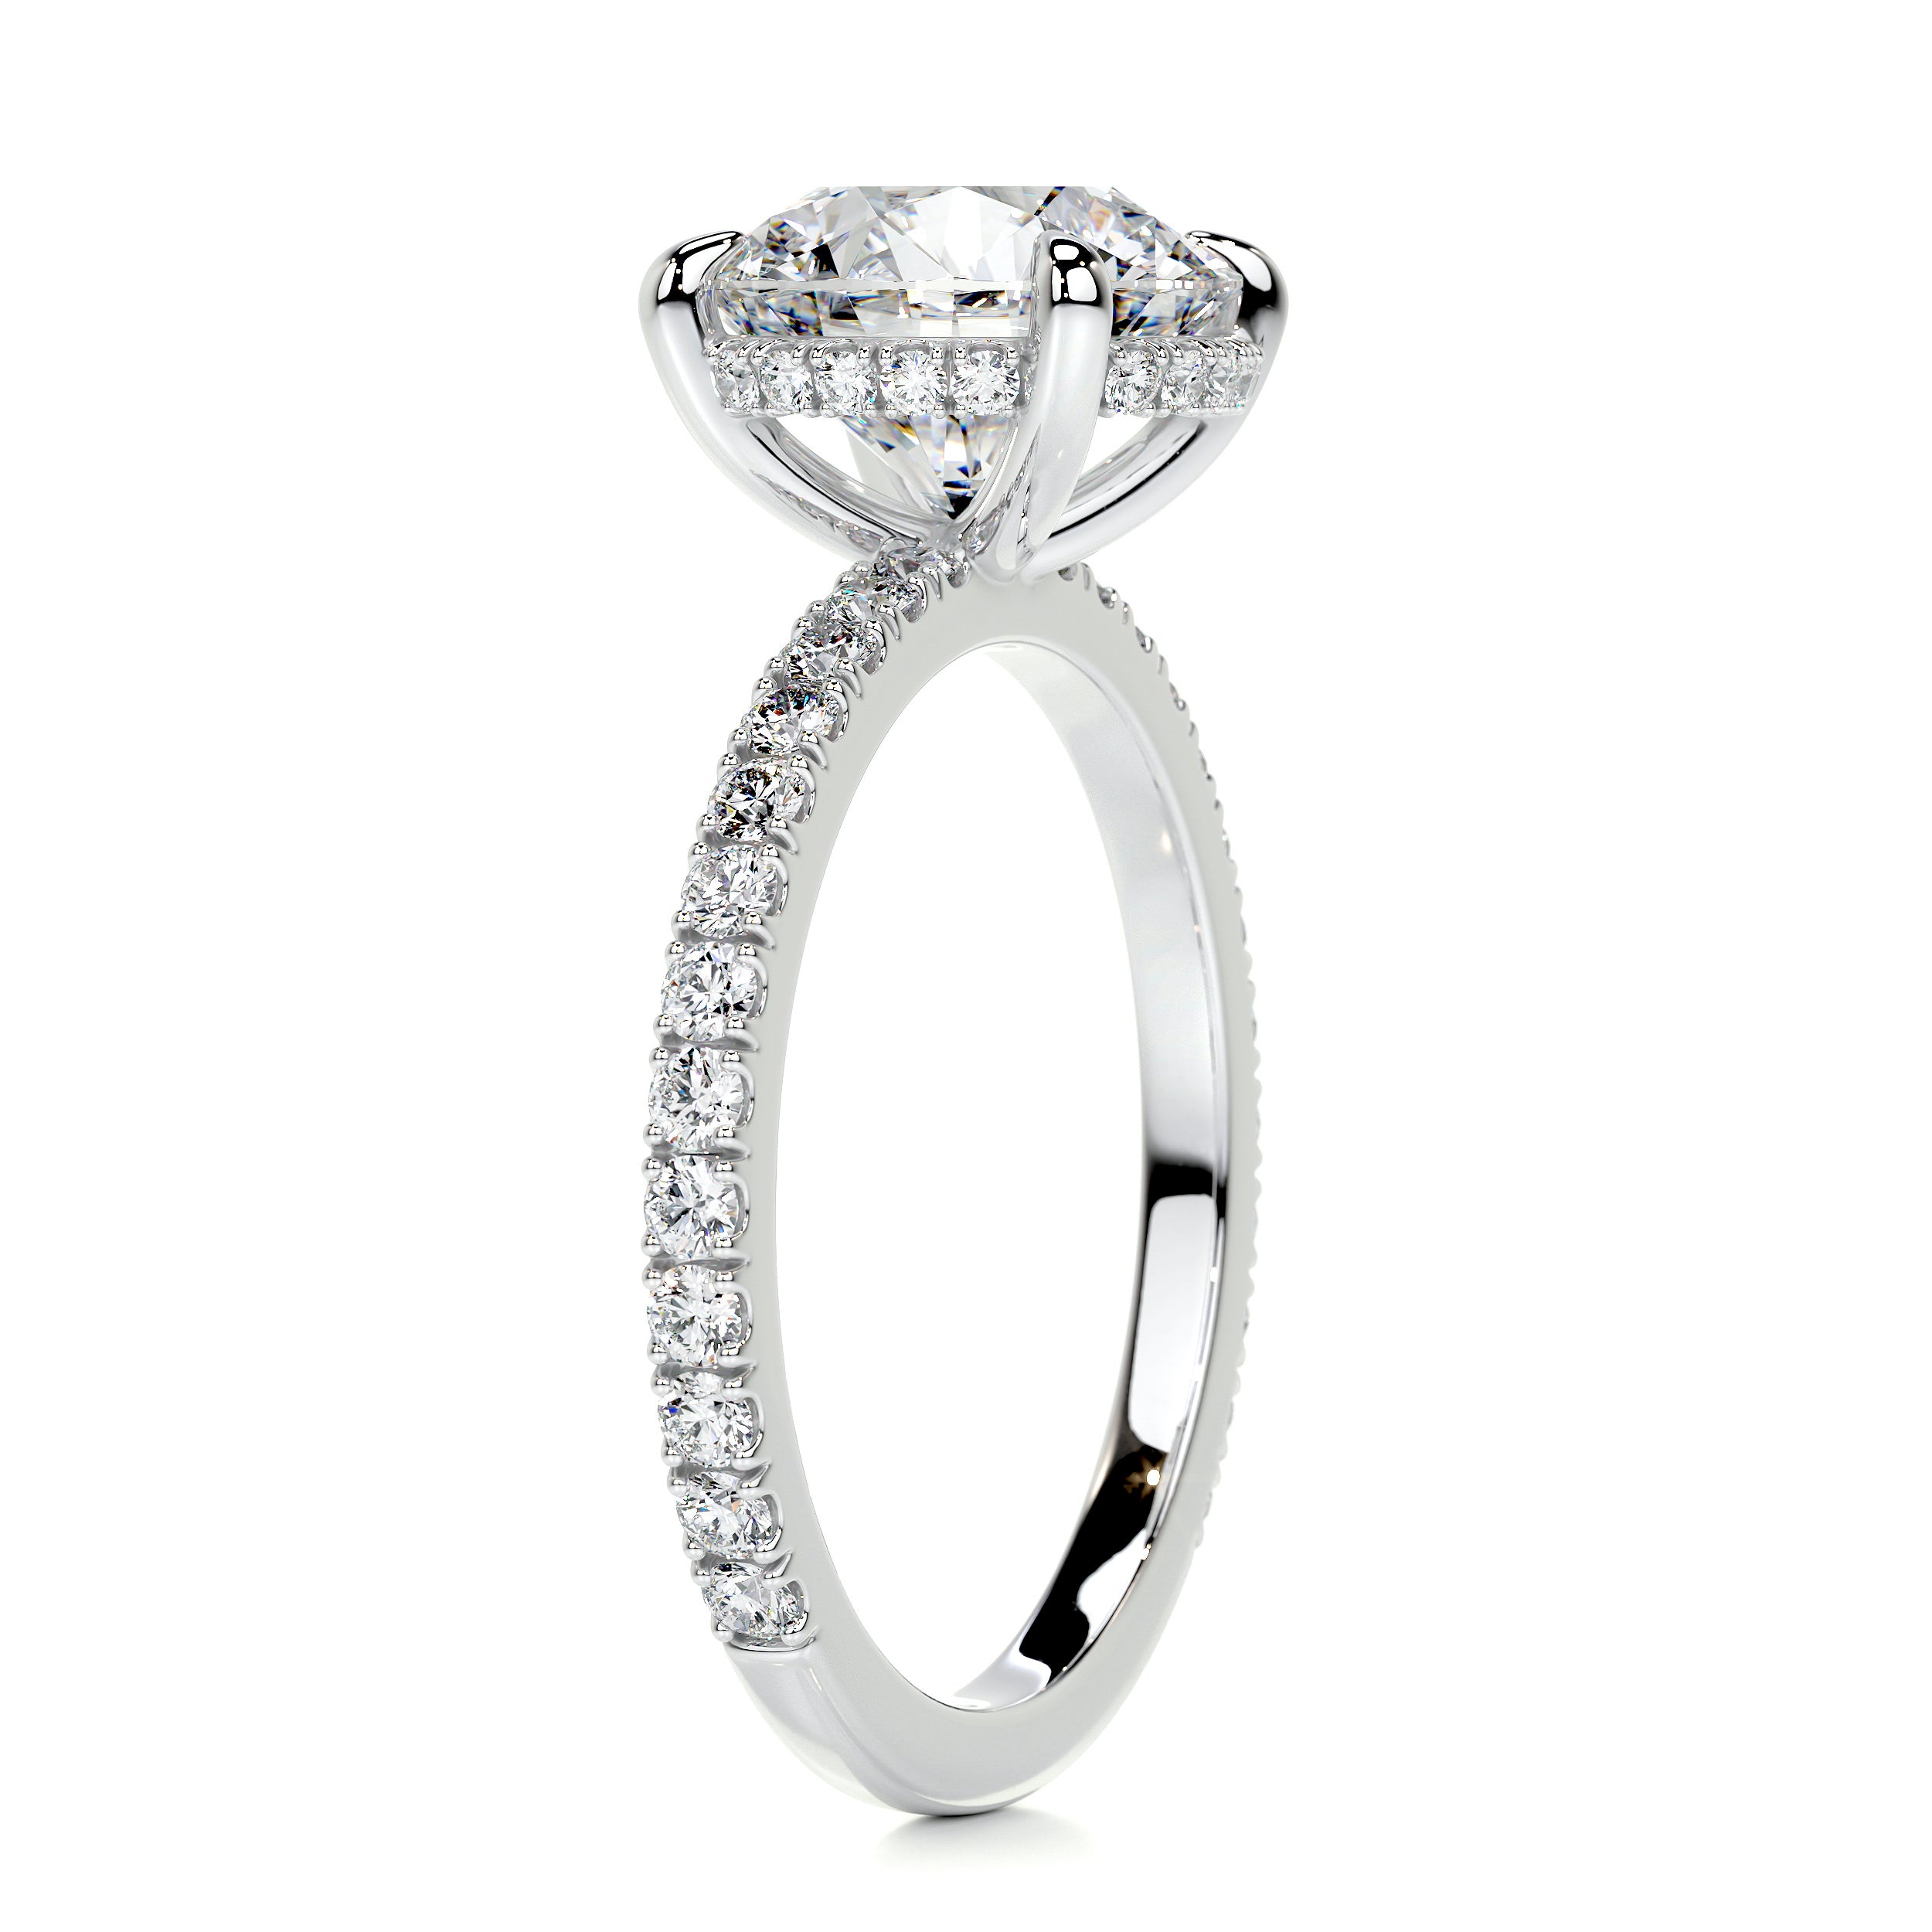 Valeria Diamond Engagement Ring   (3.00 Carat) -Platinum